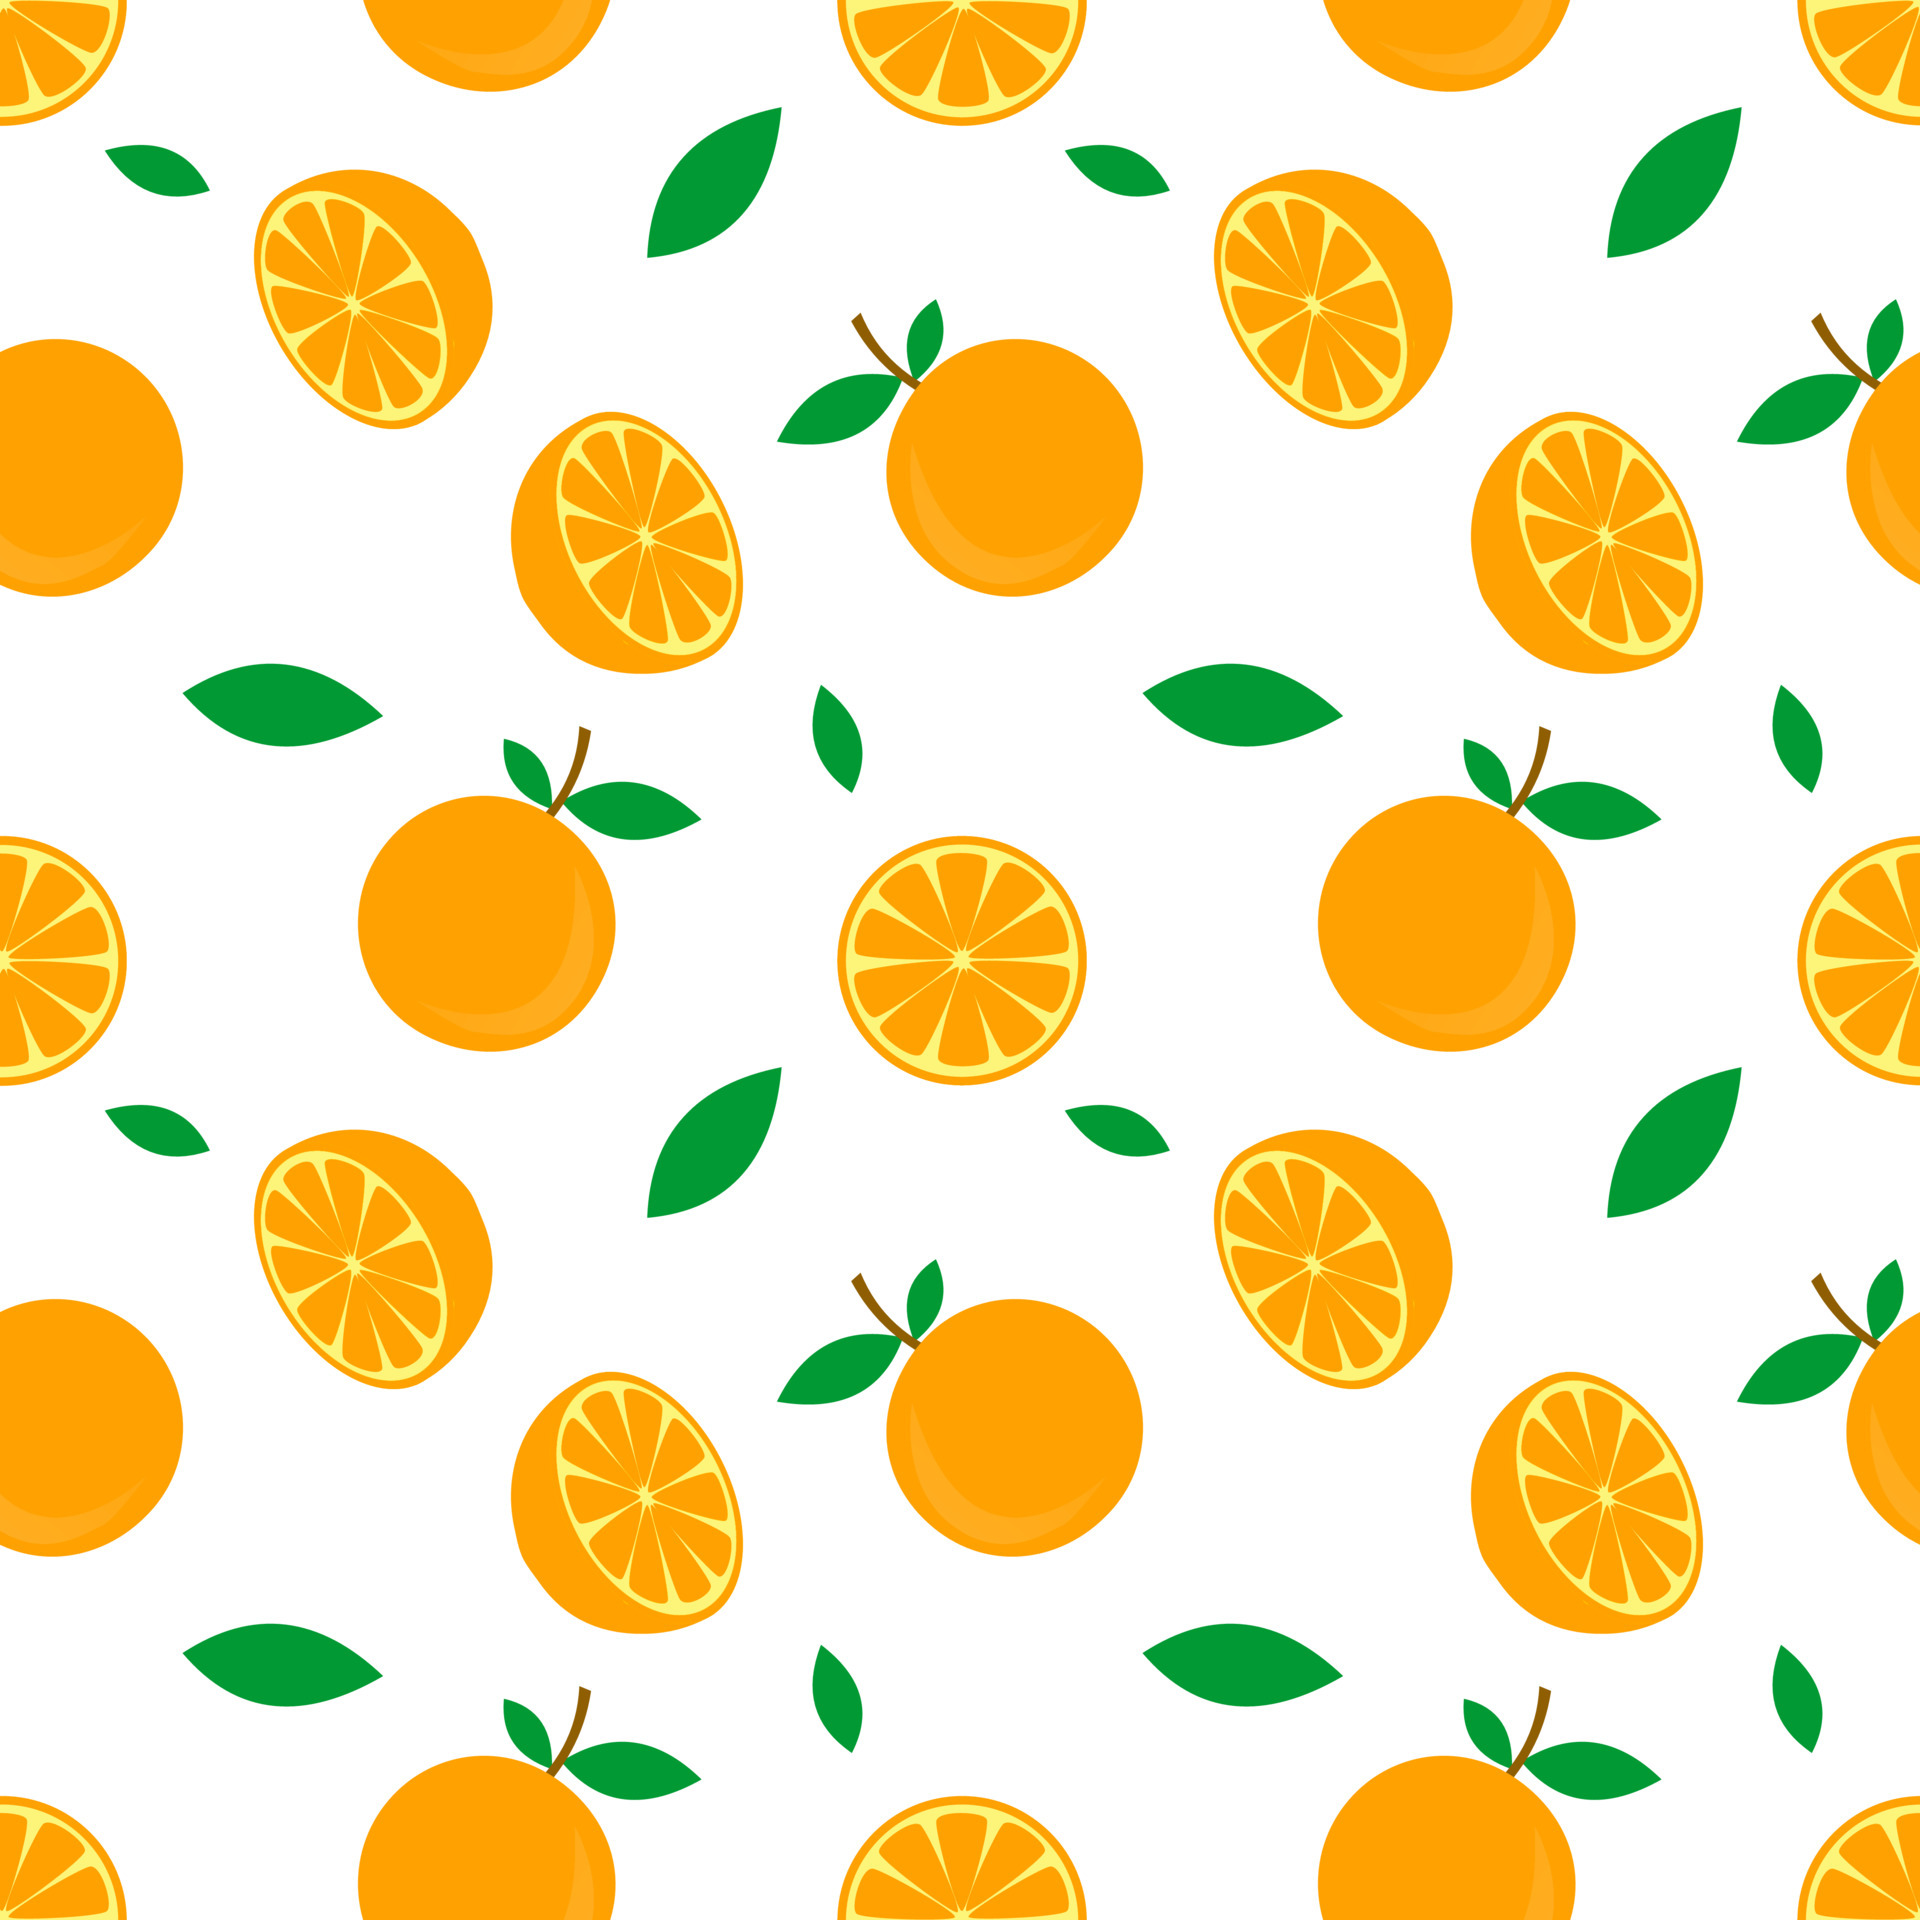 Nếu bạn đang tìm kiếm một cách để thêm một chút màu sắc và sinh động cho bài thuyết trình của mình, thì hãy tải về bộ Vector hoa quả cam ngay hôm nay. Bộ này bao gồm họa tiết vector và biểu tượng tuyệt đẹp của các loại trái cây cam, rất phù hợp với các chủ đề về dinh dưỡng, sức khỏe hay thực phẩm. Và đặc biệt, bạn có thể tải về miễn phí!